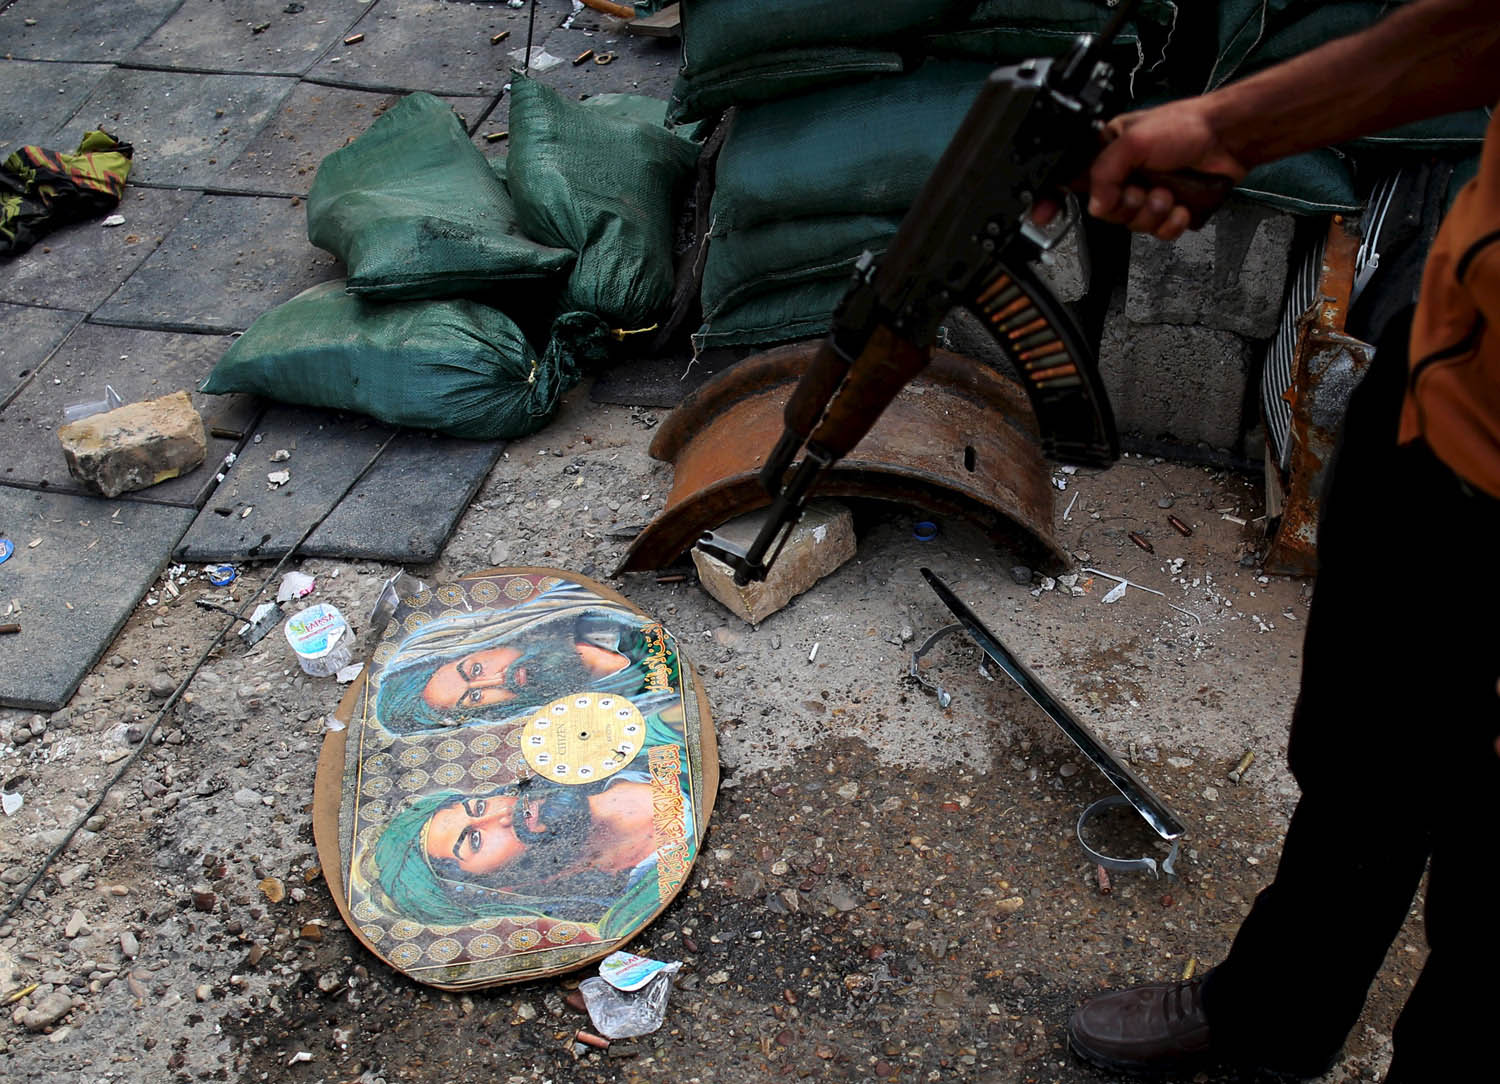 مقاتل من الأكراد يشير إلى صور دينية بعد اشتباك مع قوات شيعية في طوز خورماتو في العراق